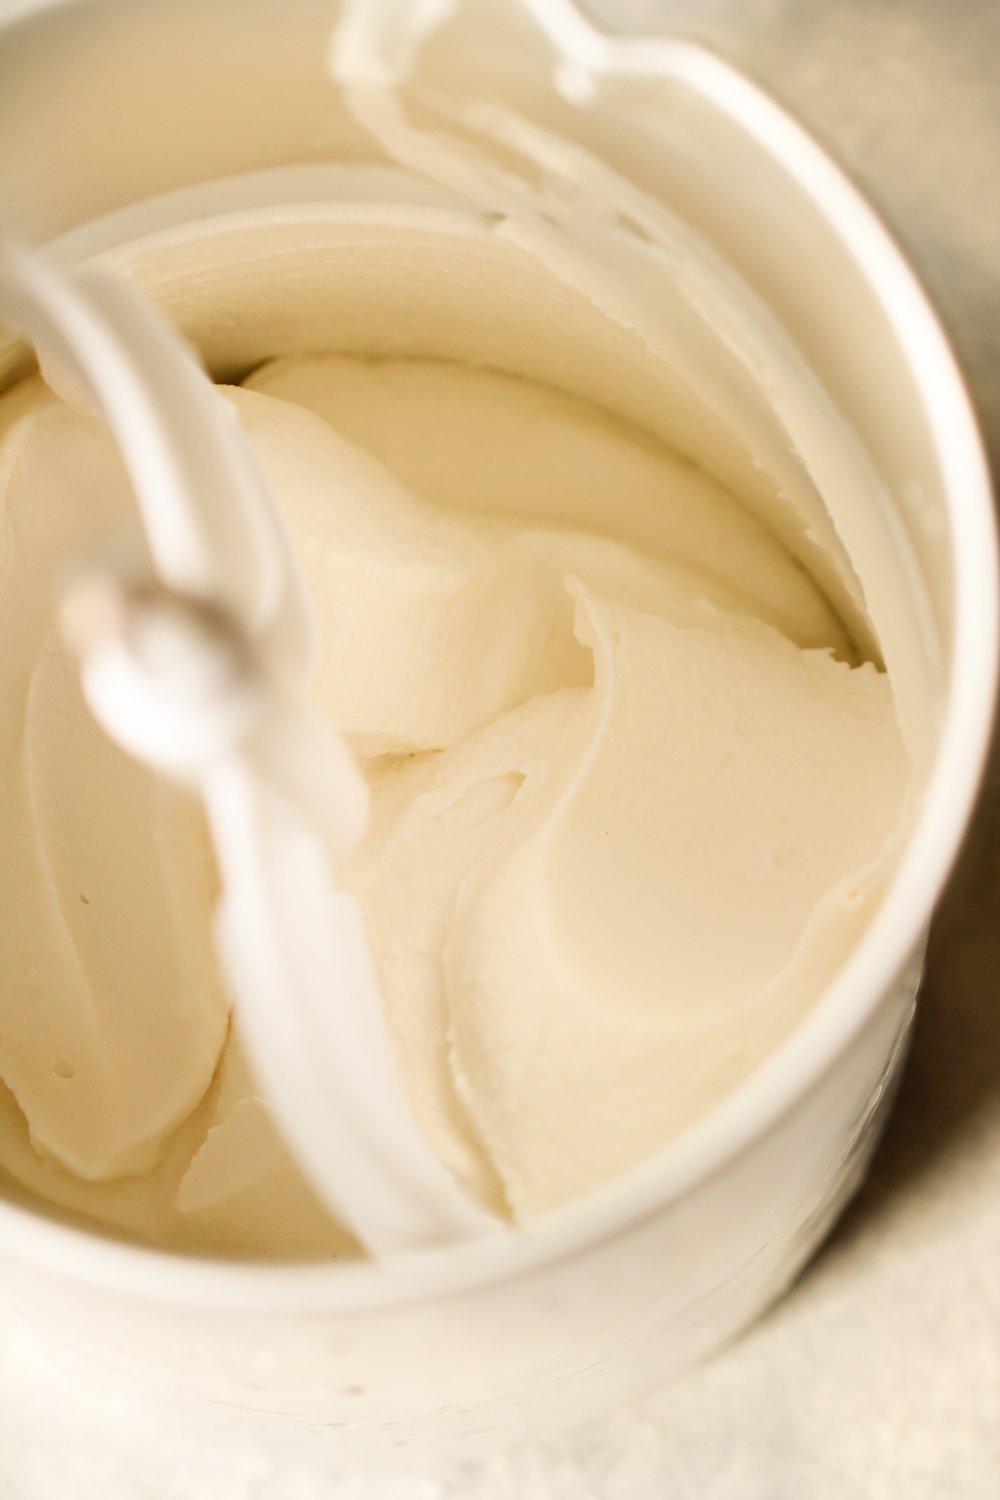 Old Fashioned Homemade Vanilla Ice Cream in ice cream maker